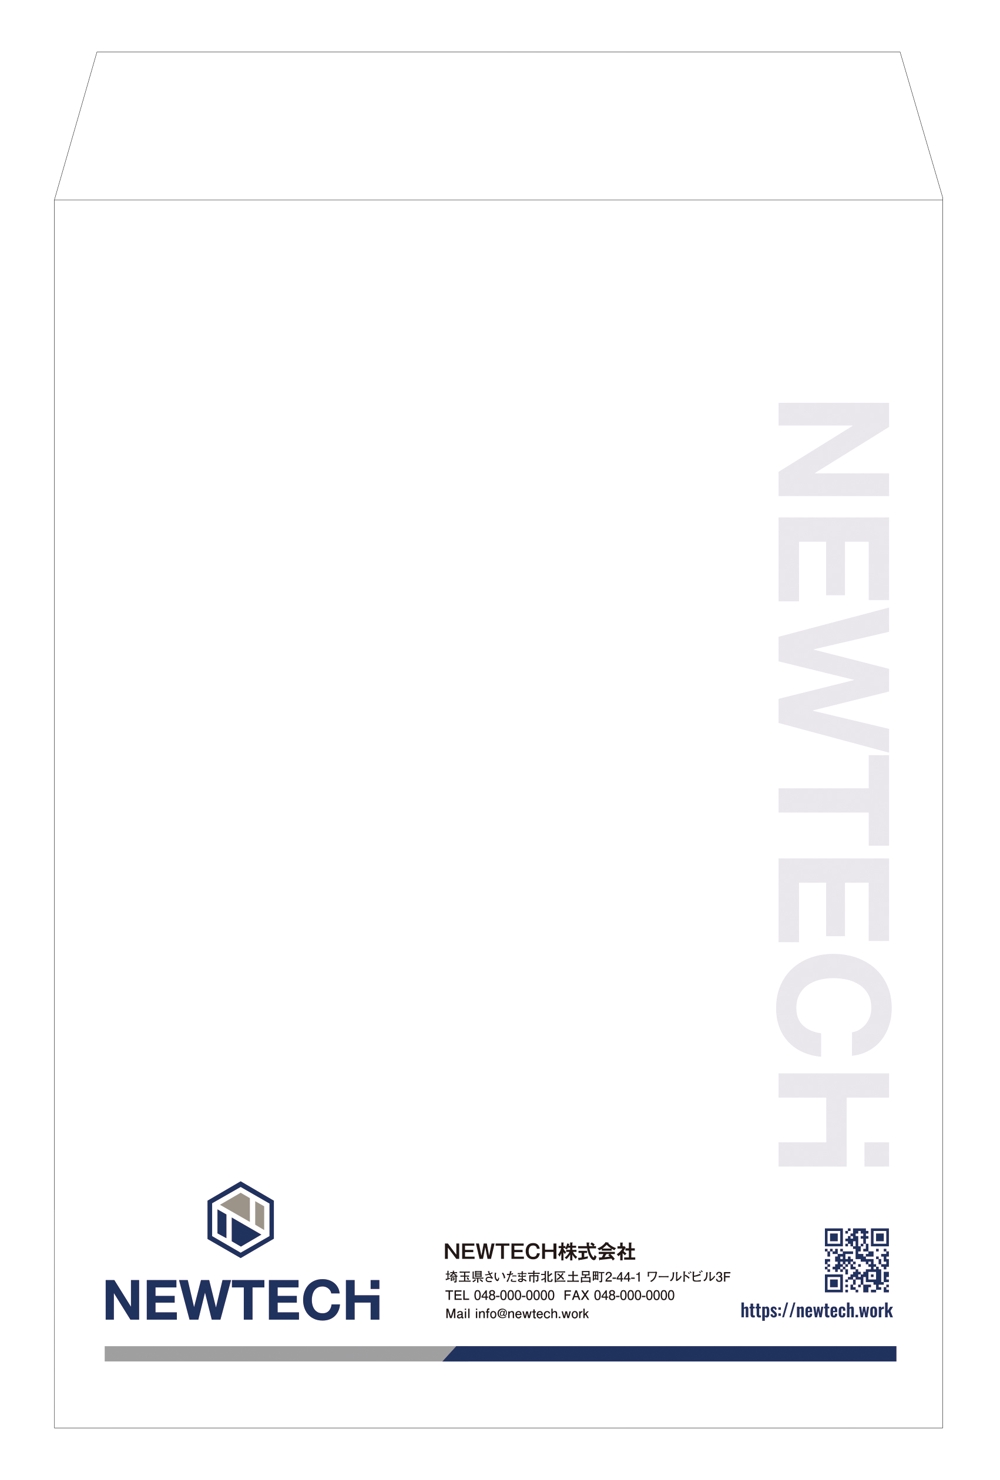 内装業者「NEWTECH株式会社」の封筒デザイン依頼